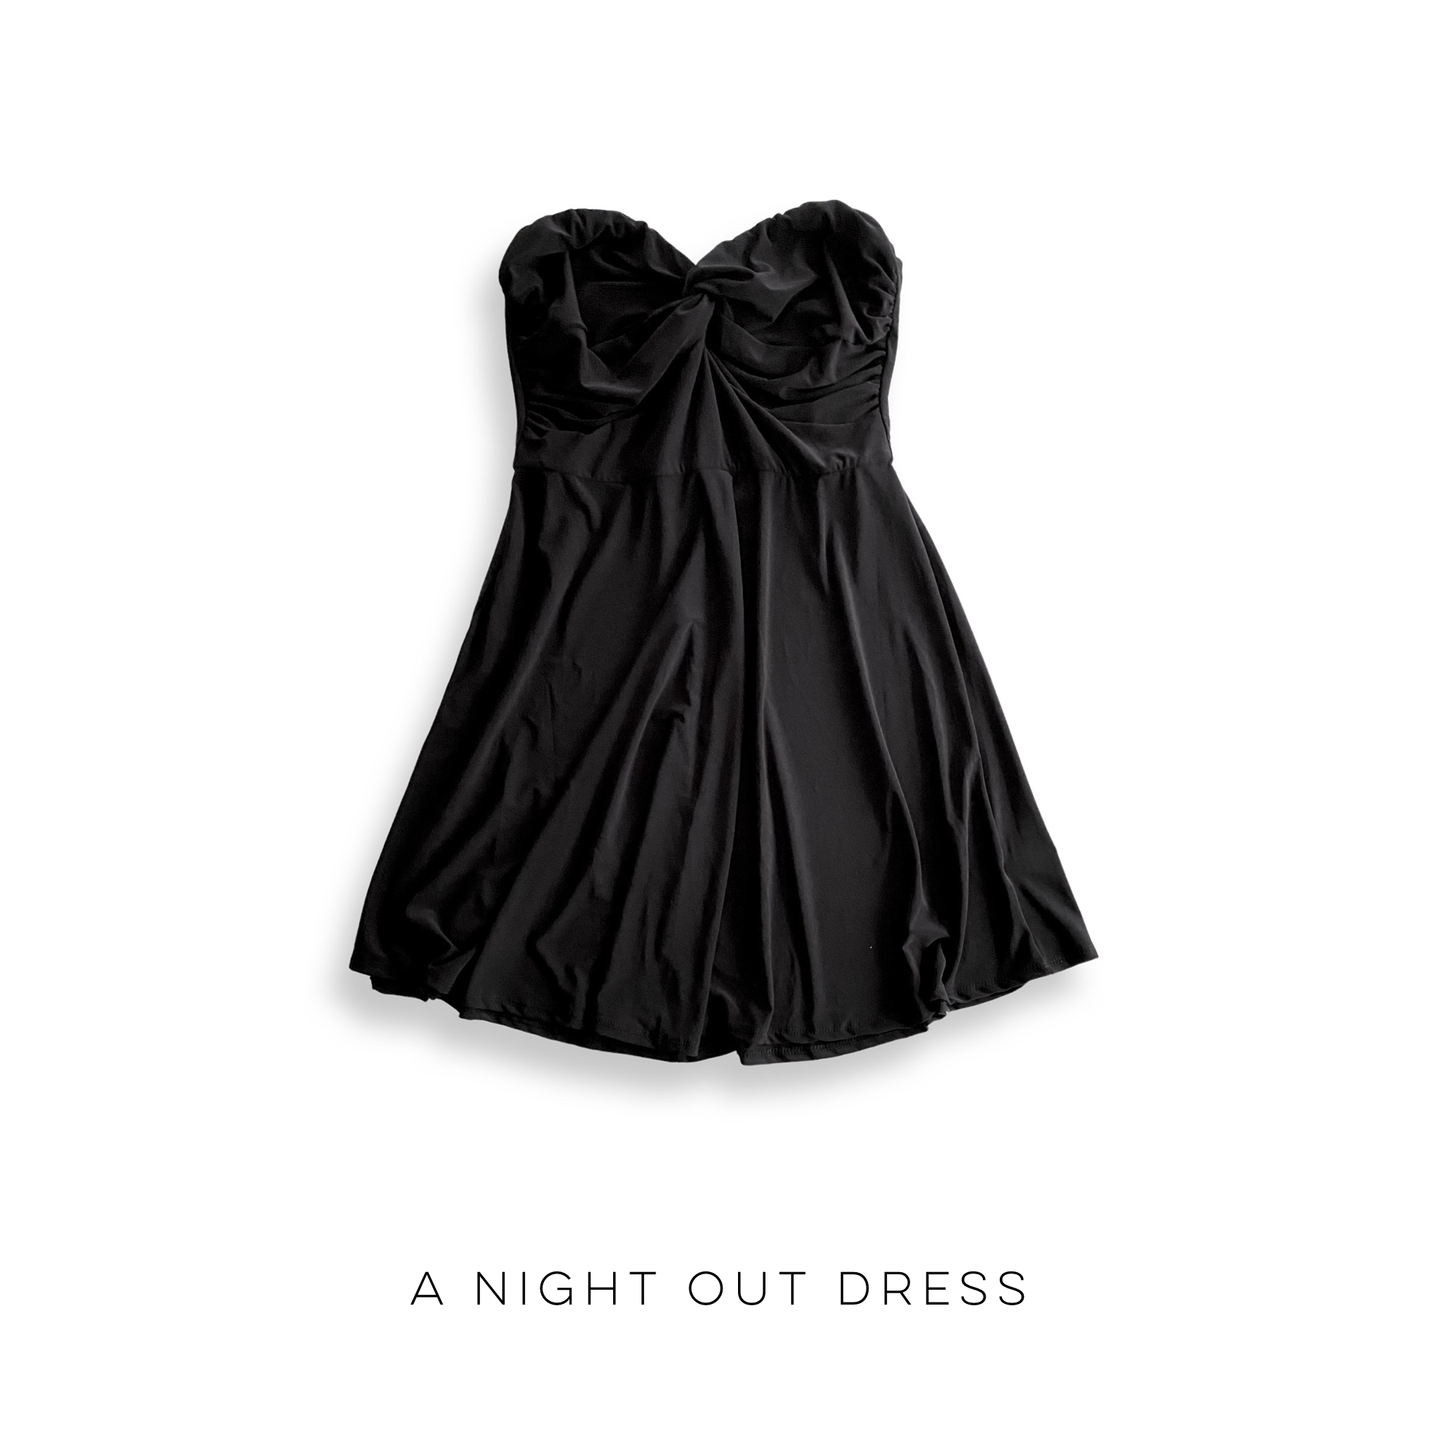 A Night Out Dress